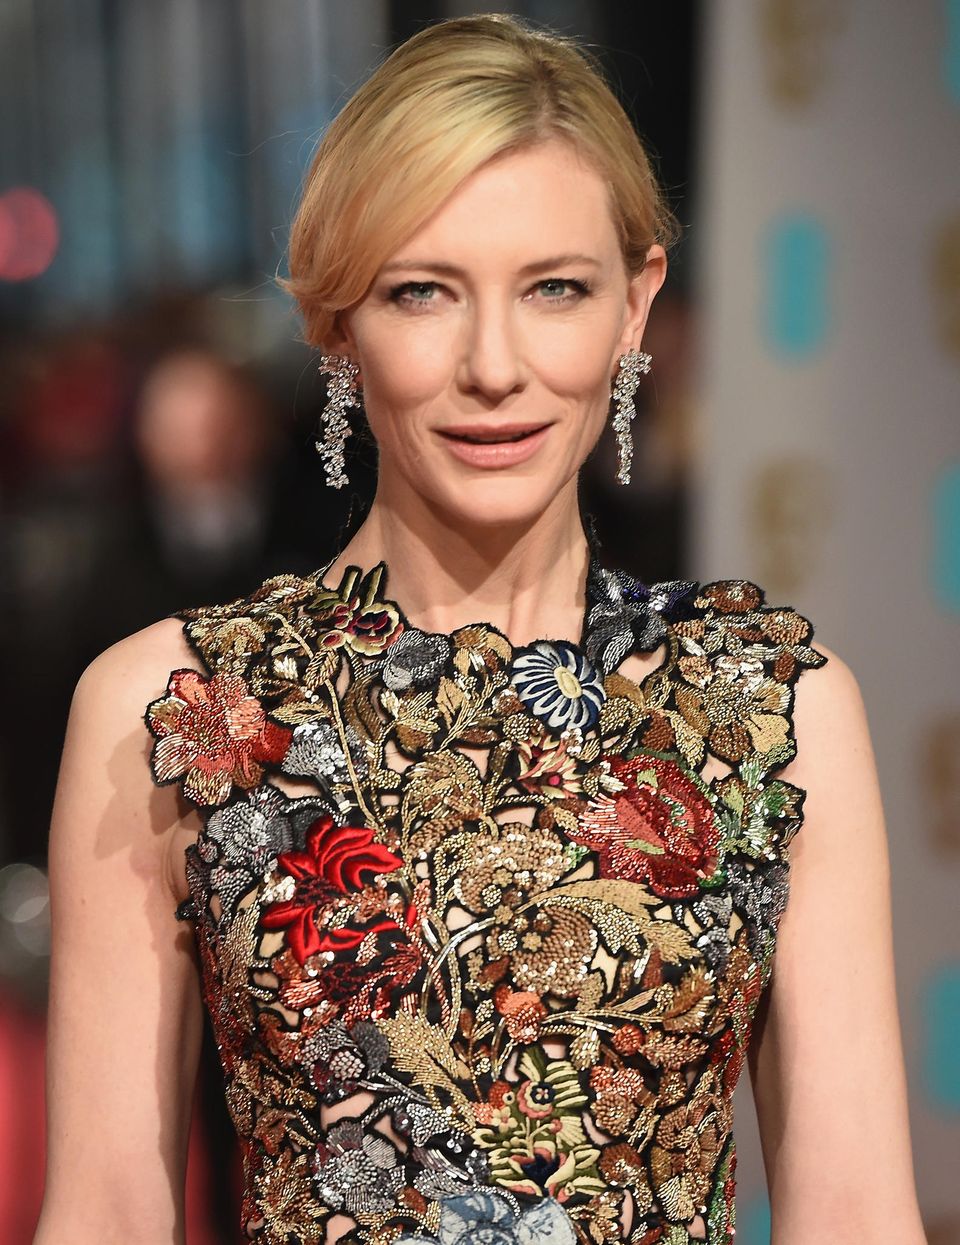 Statement-Ohrringe: Glitzerohrringe bei Kate Blanchett